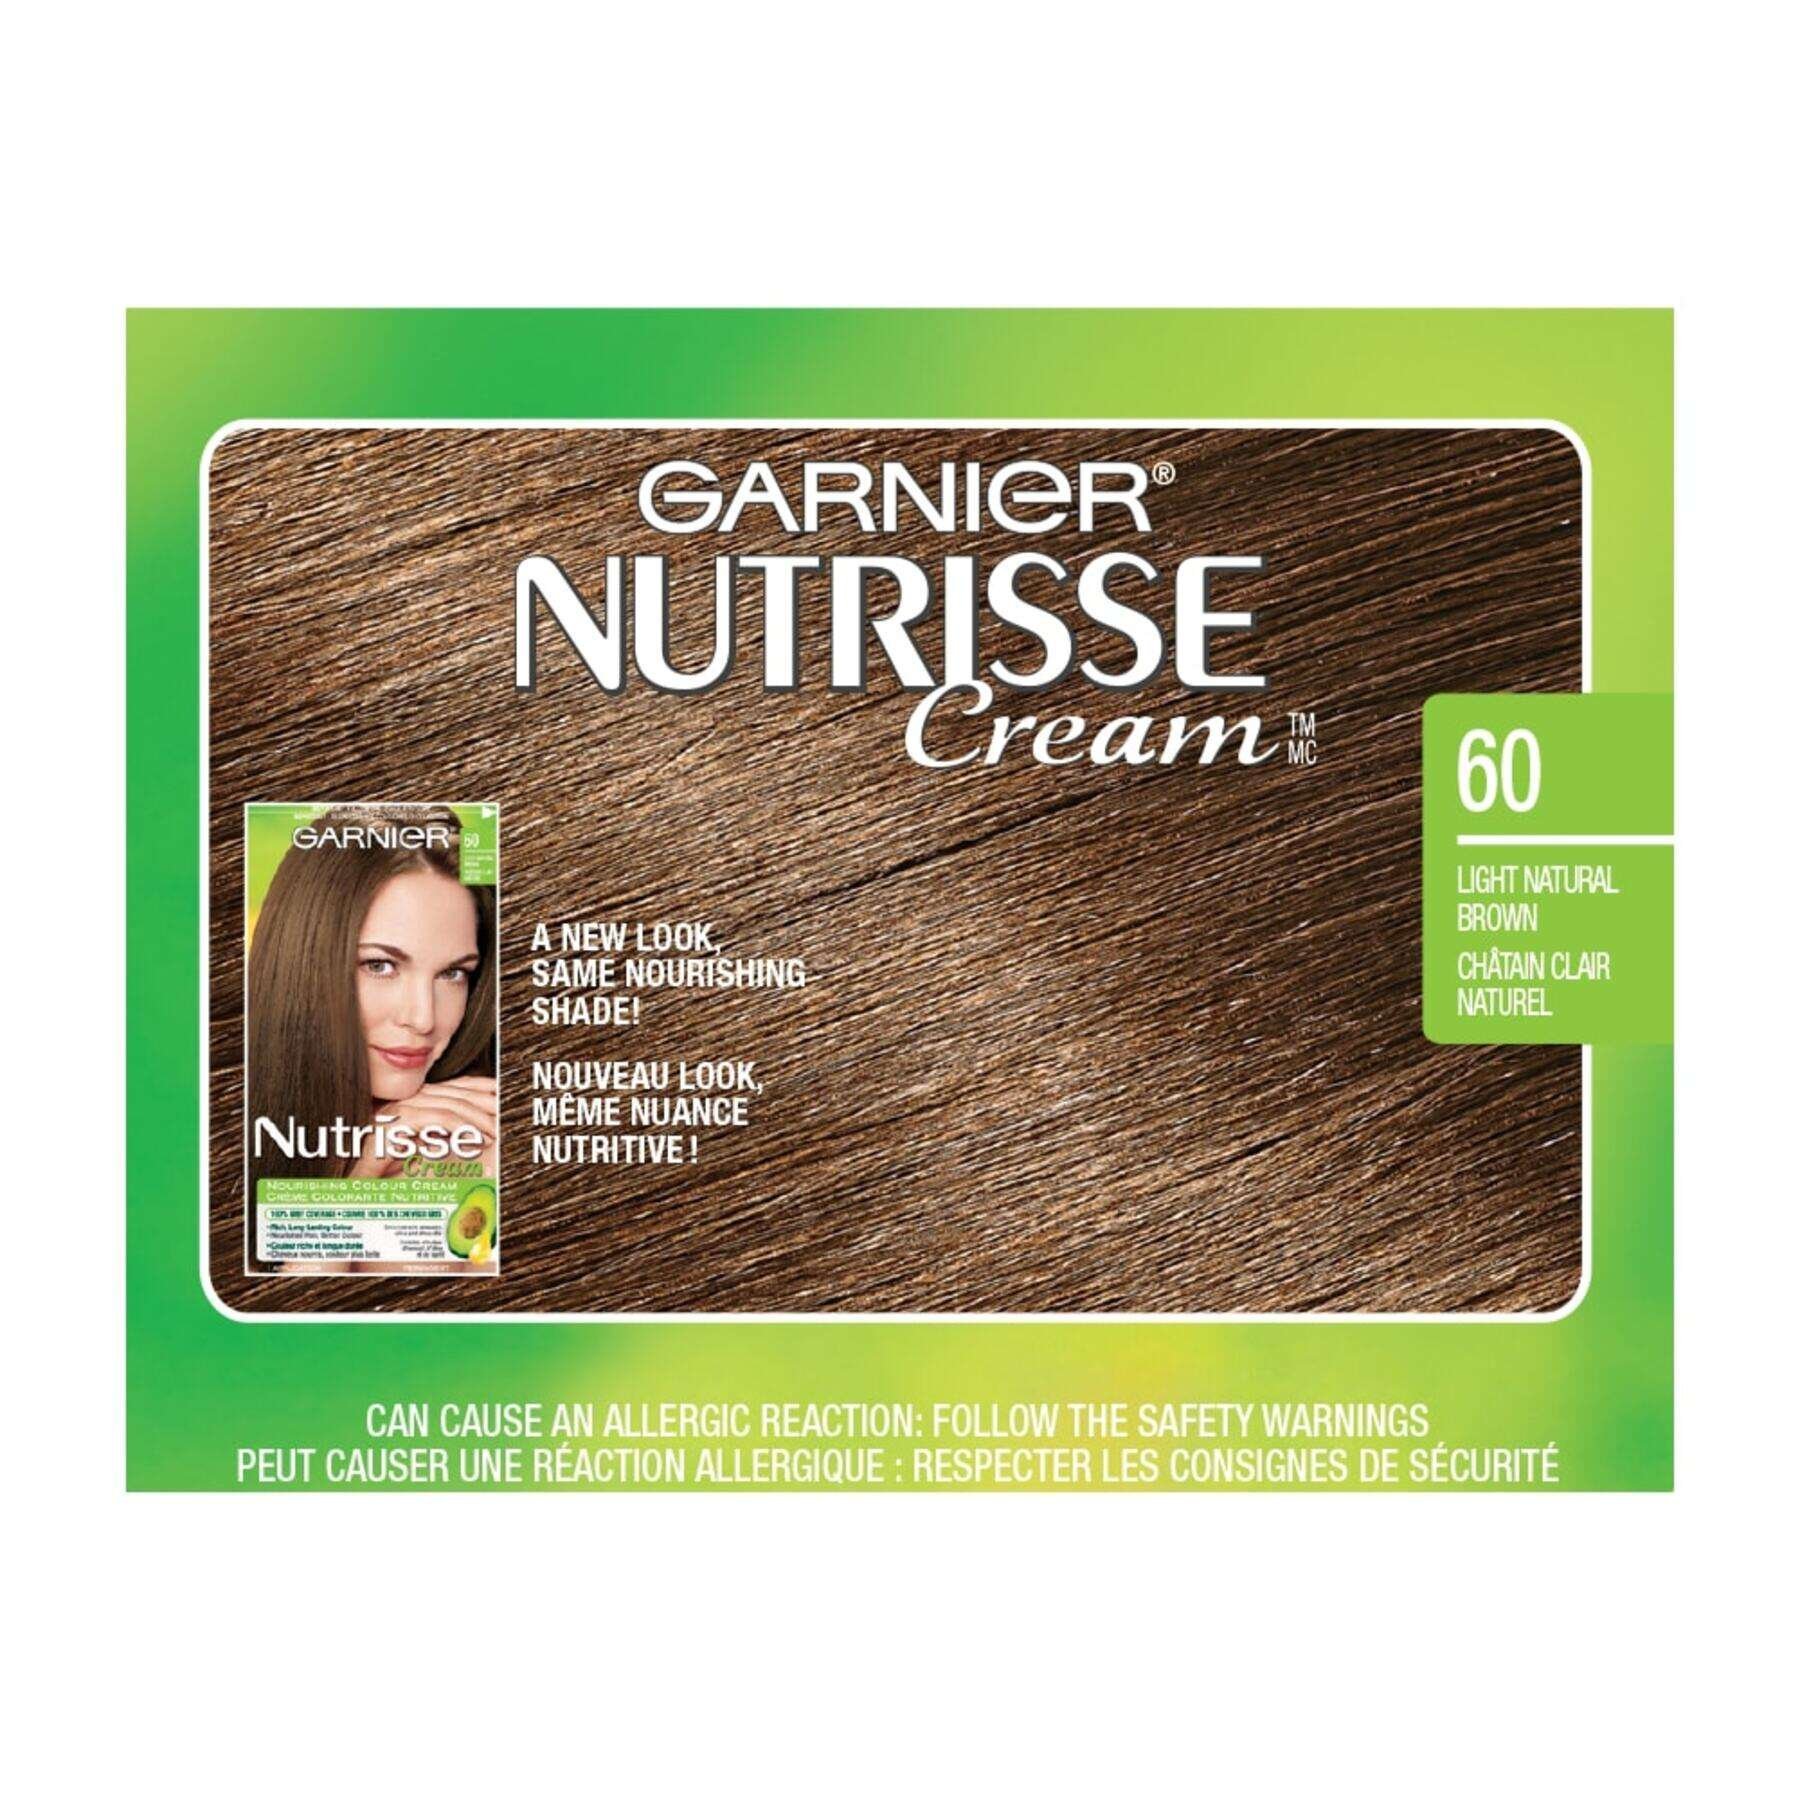 garnier hair dye nutrisse cream 60 light natural brown 0770103447148 swatch